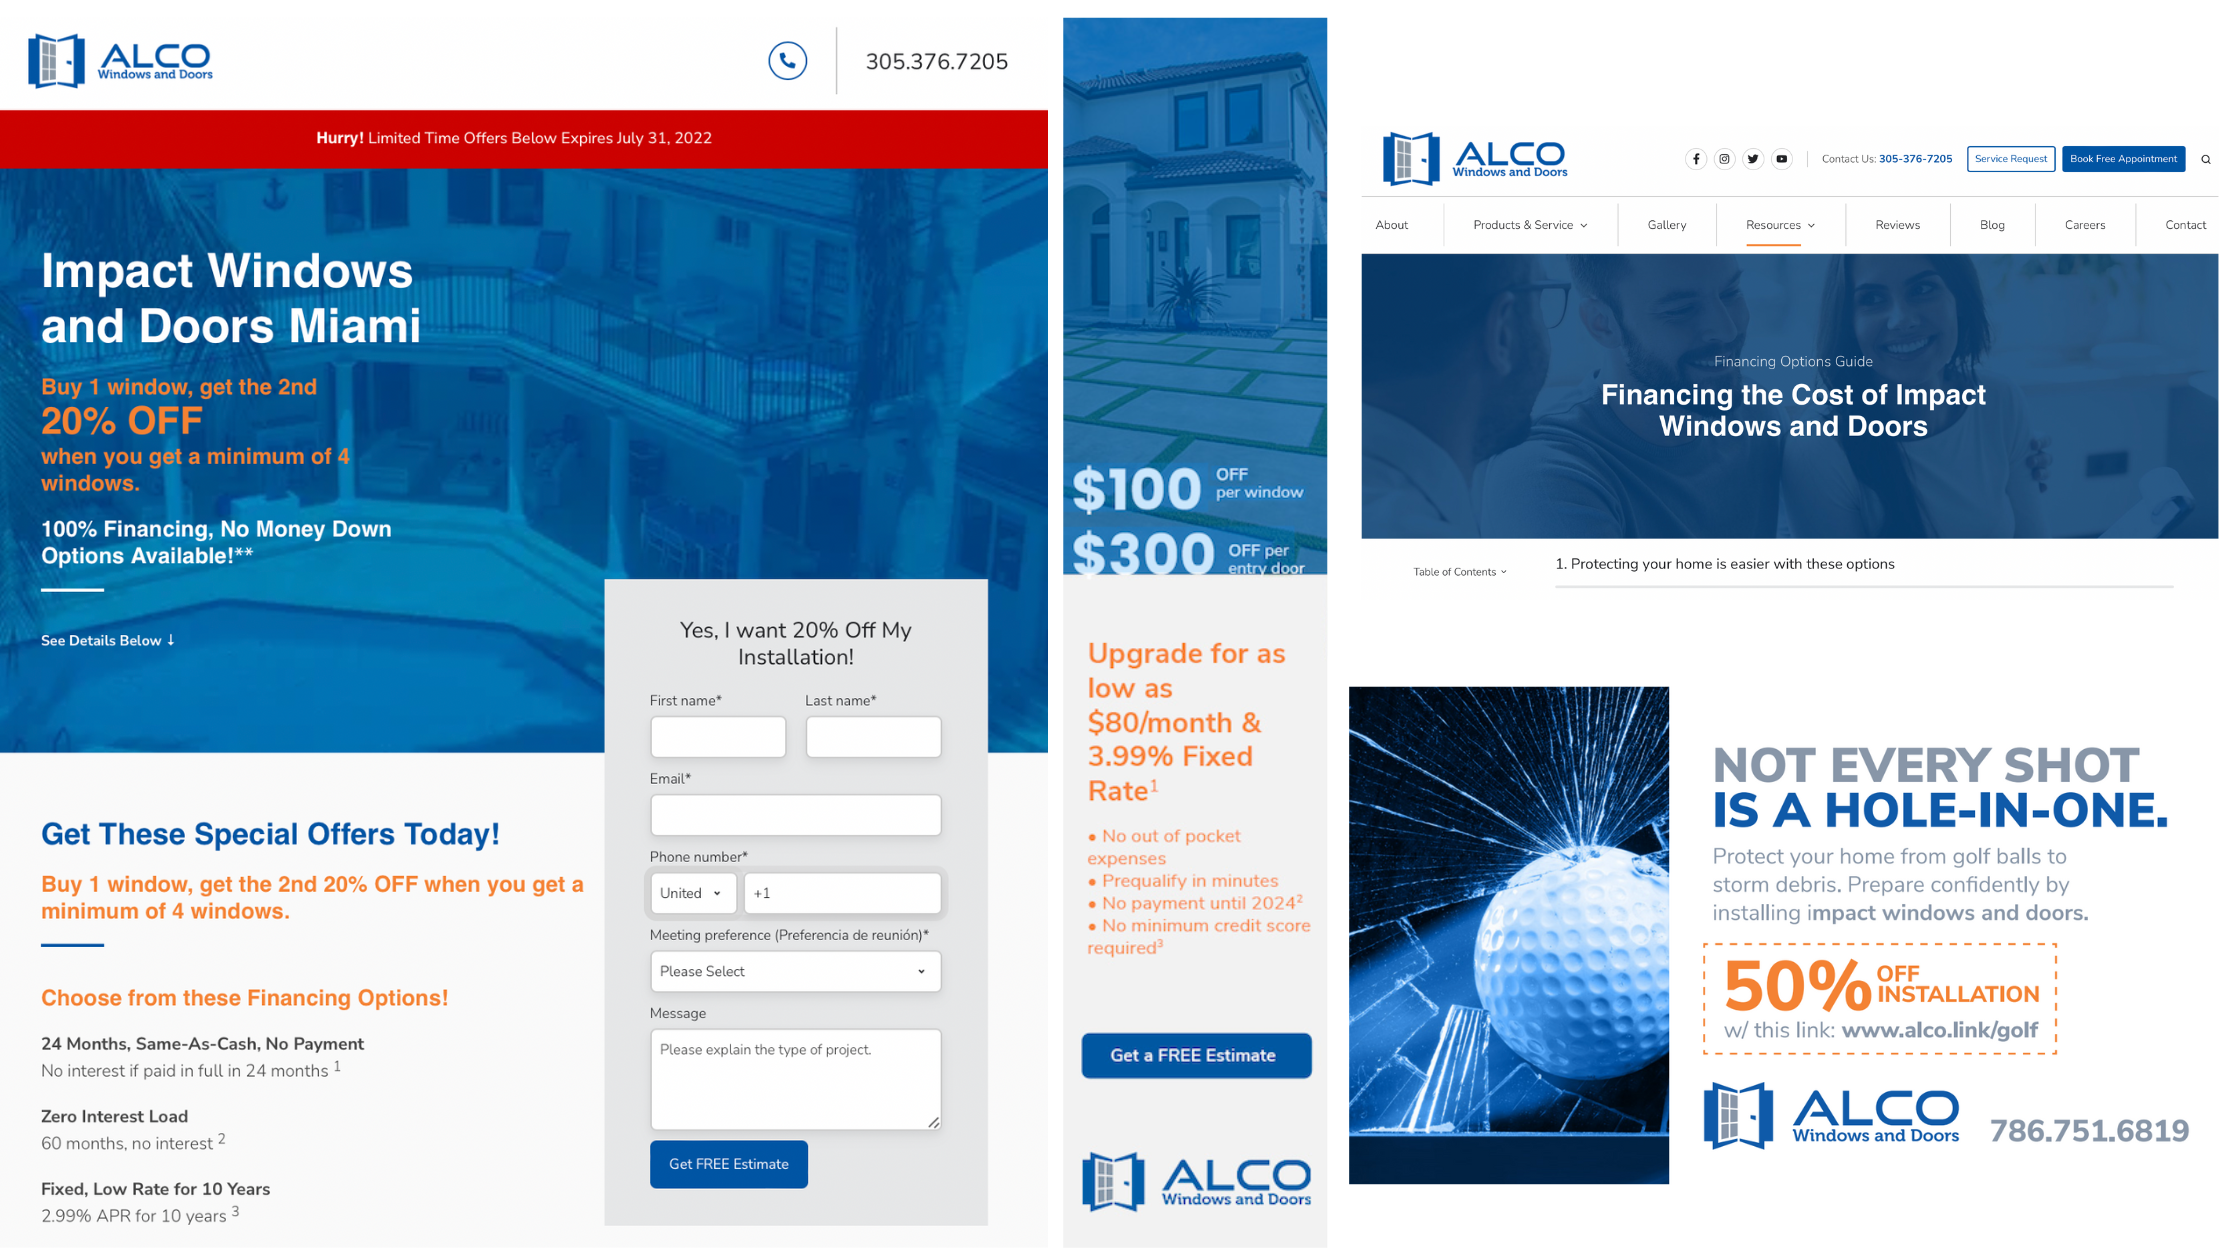 Alco Finance Campaign Collage